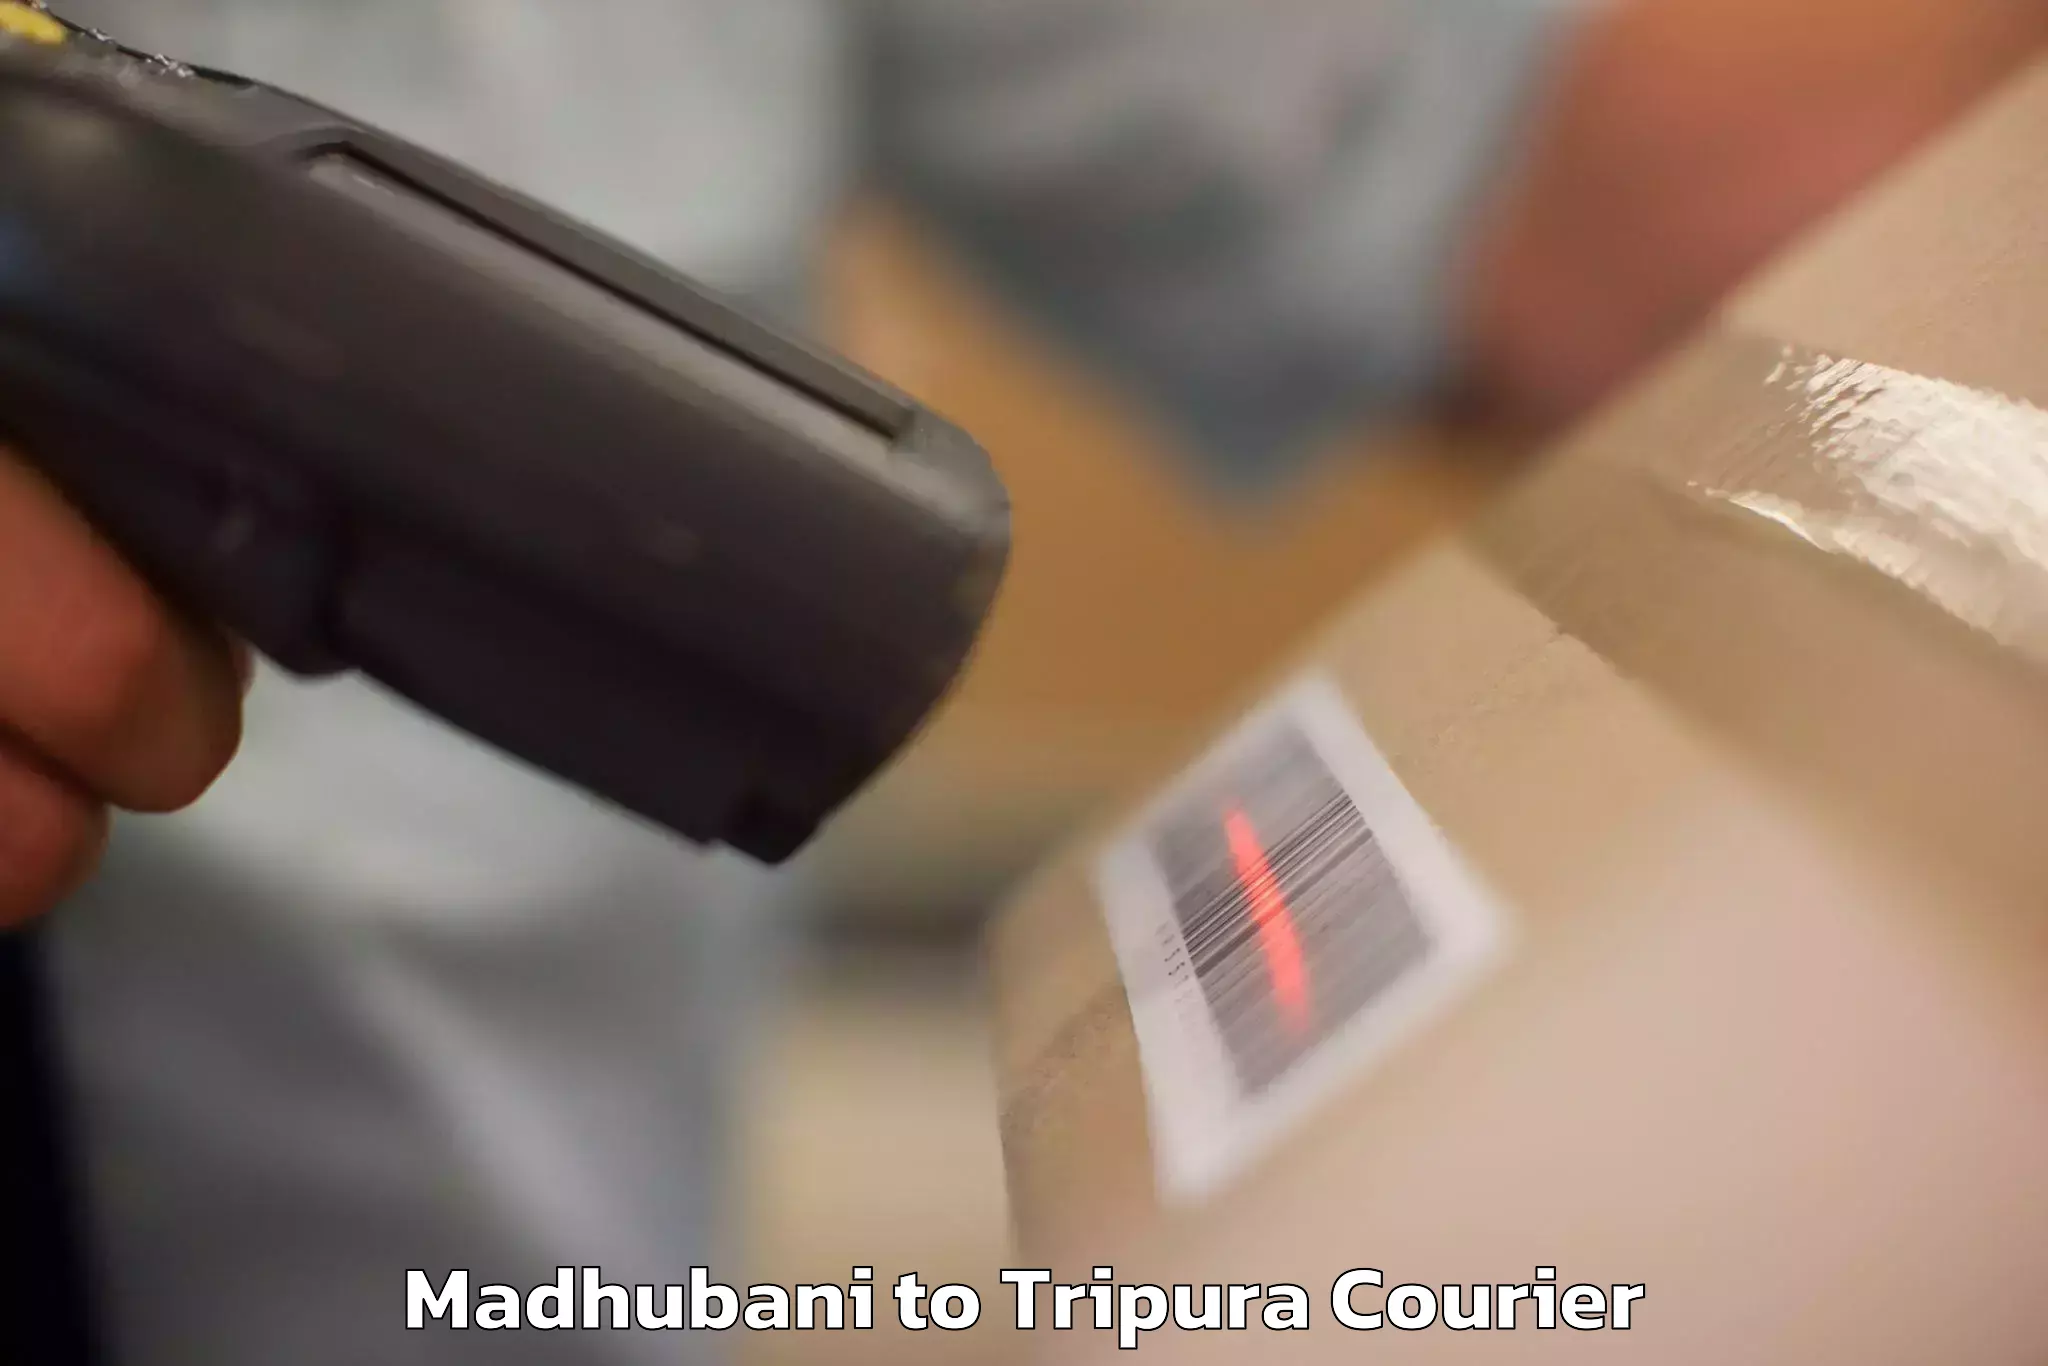 Baggage transport scheduler Madhubani to Udaipur Tripura